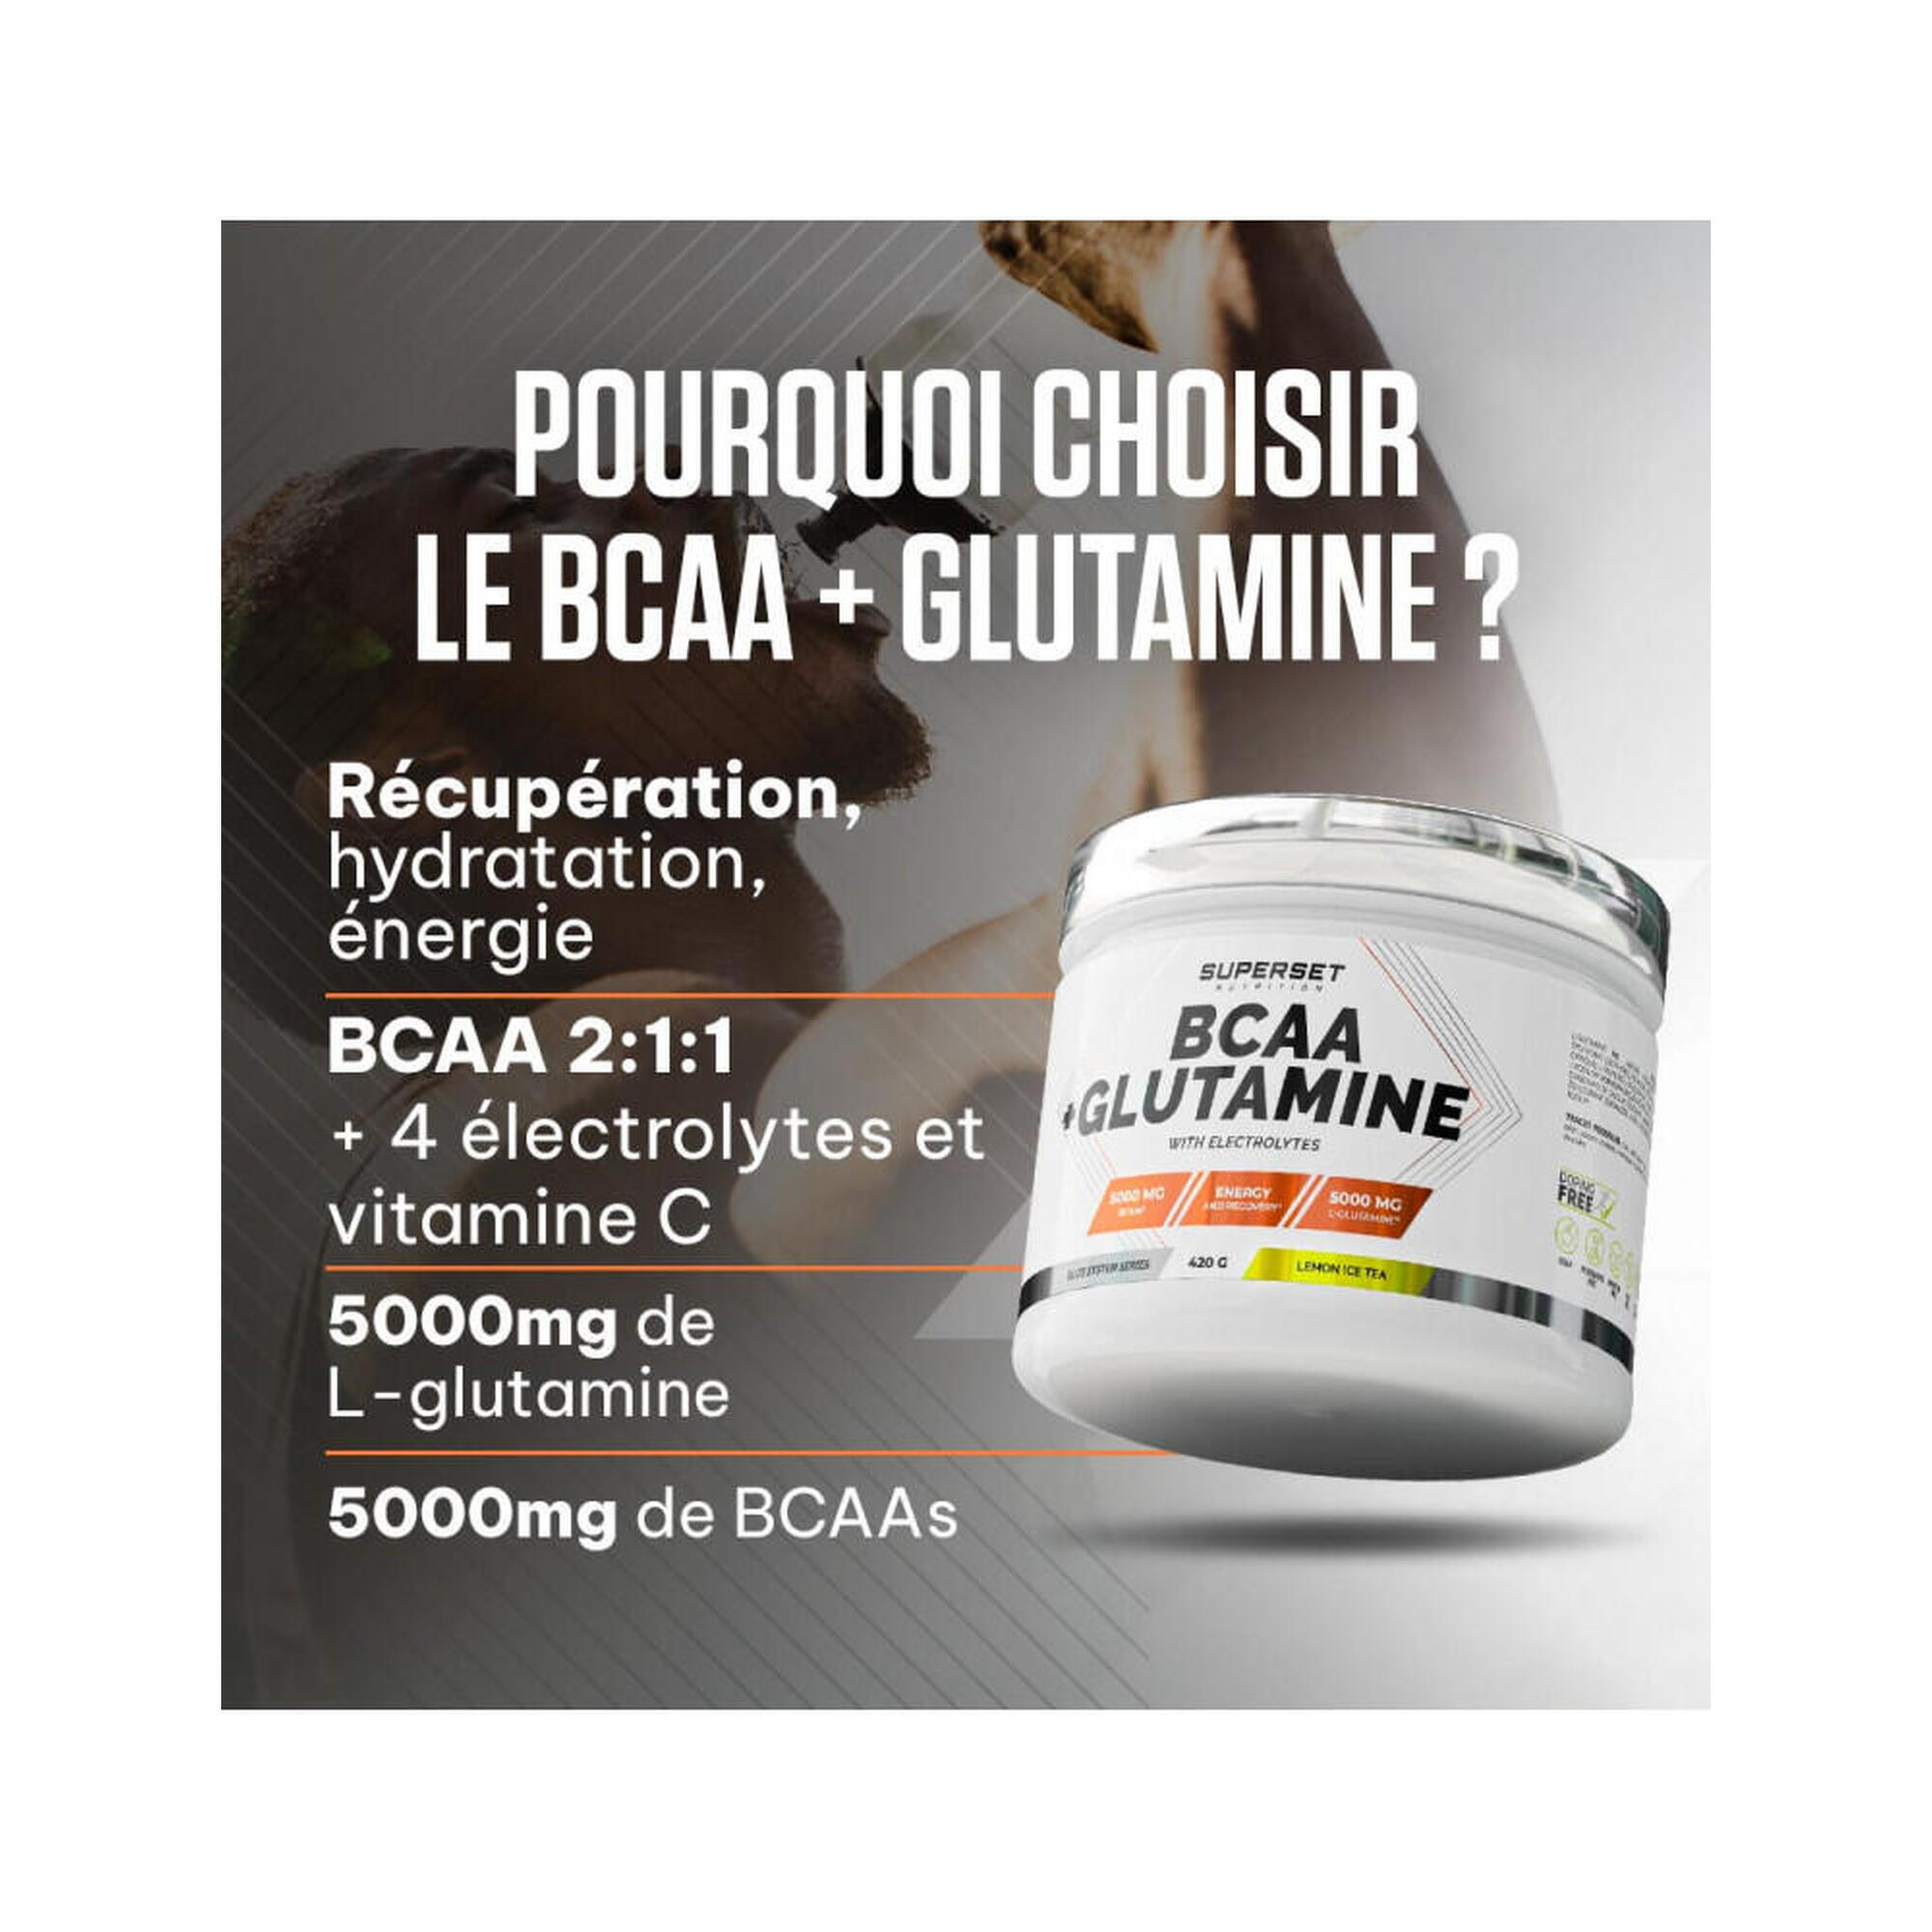 BCAA + GLUTAMINE (420G) | Ice Tea Citron